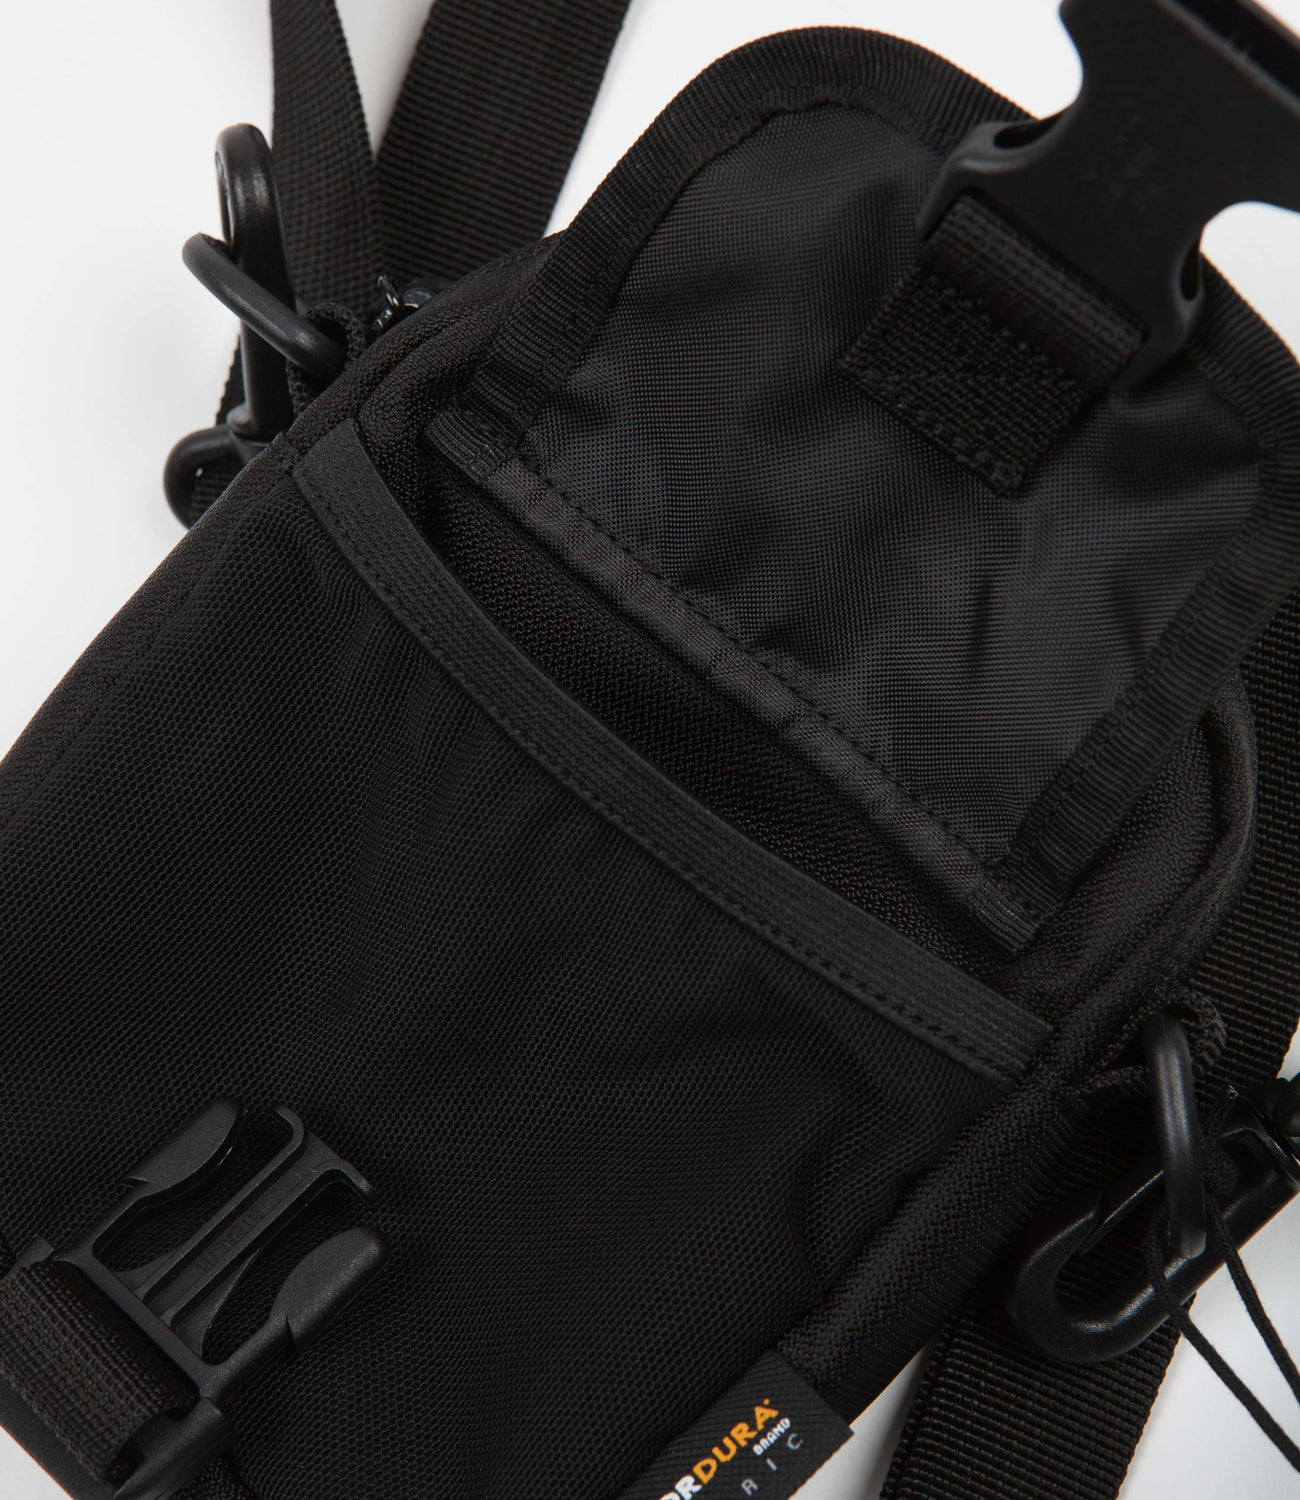 Carhartt Delta Shoulder Bag Review